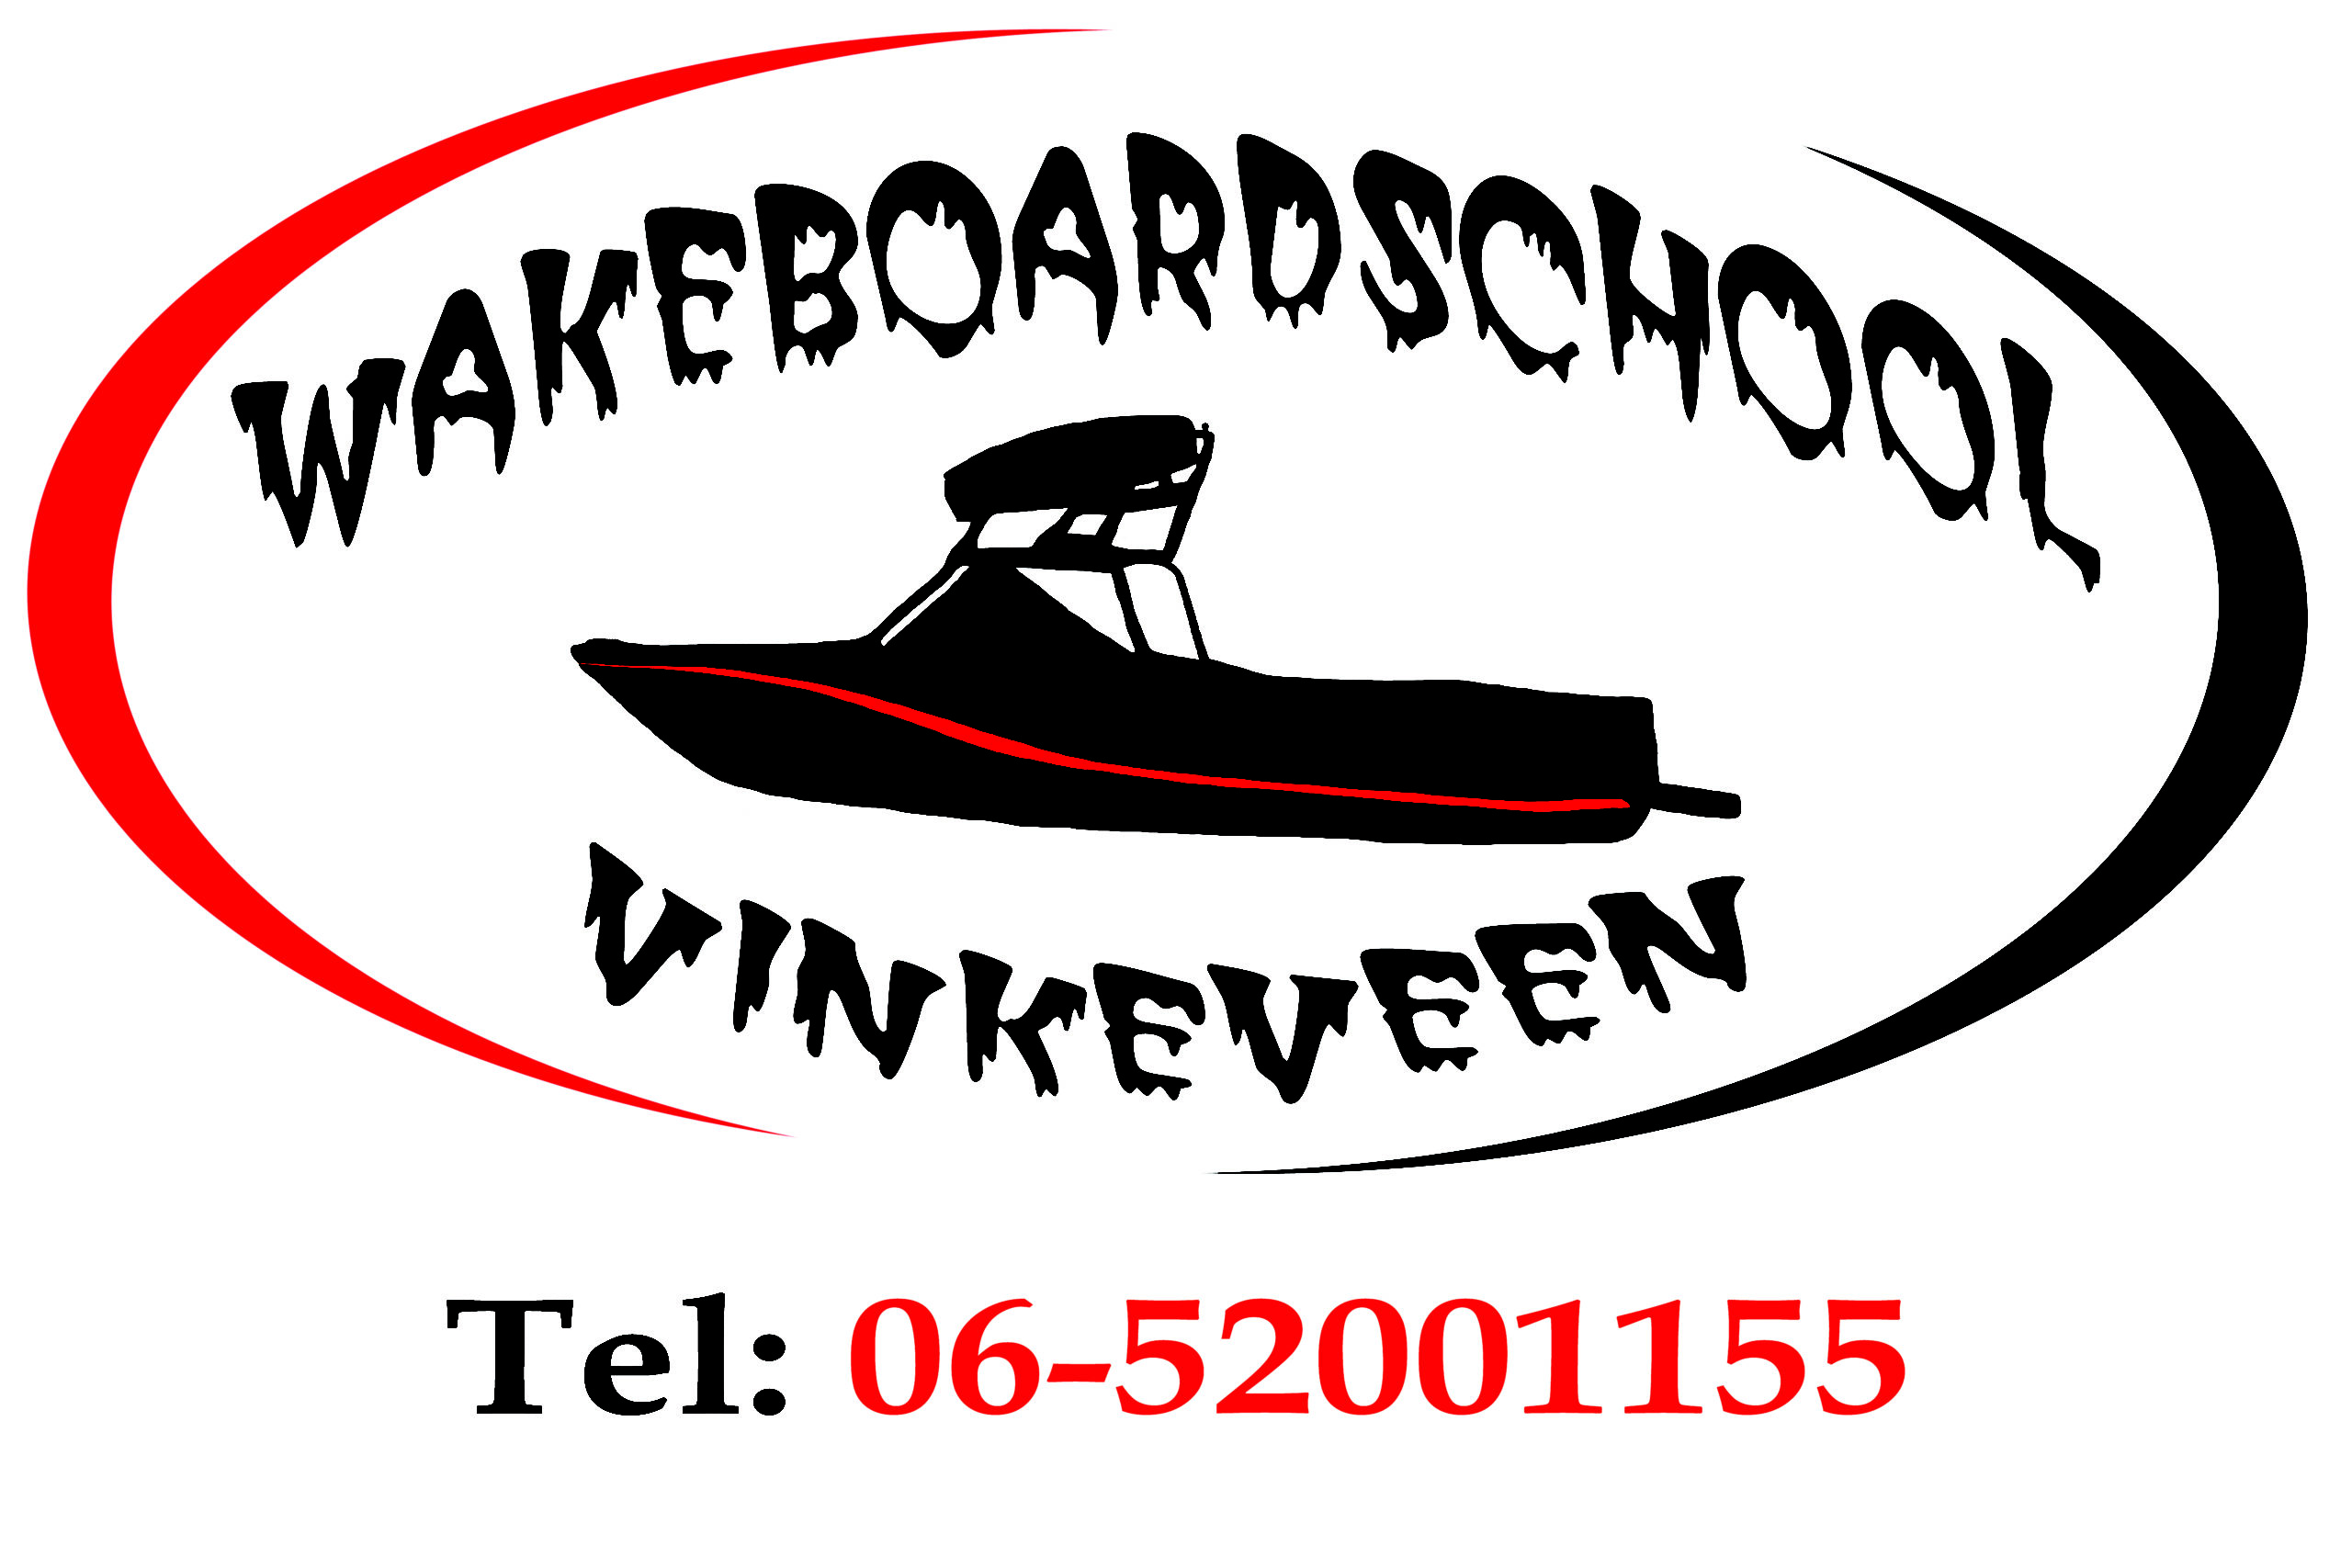 (c) Wakeboardschoolvinkeveen.nl